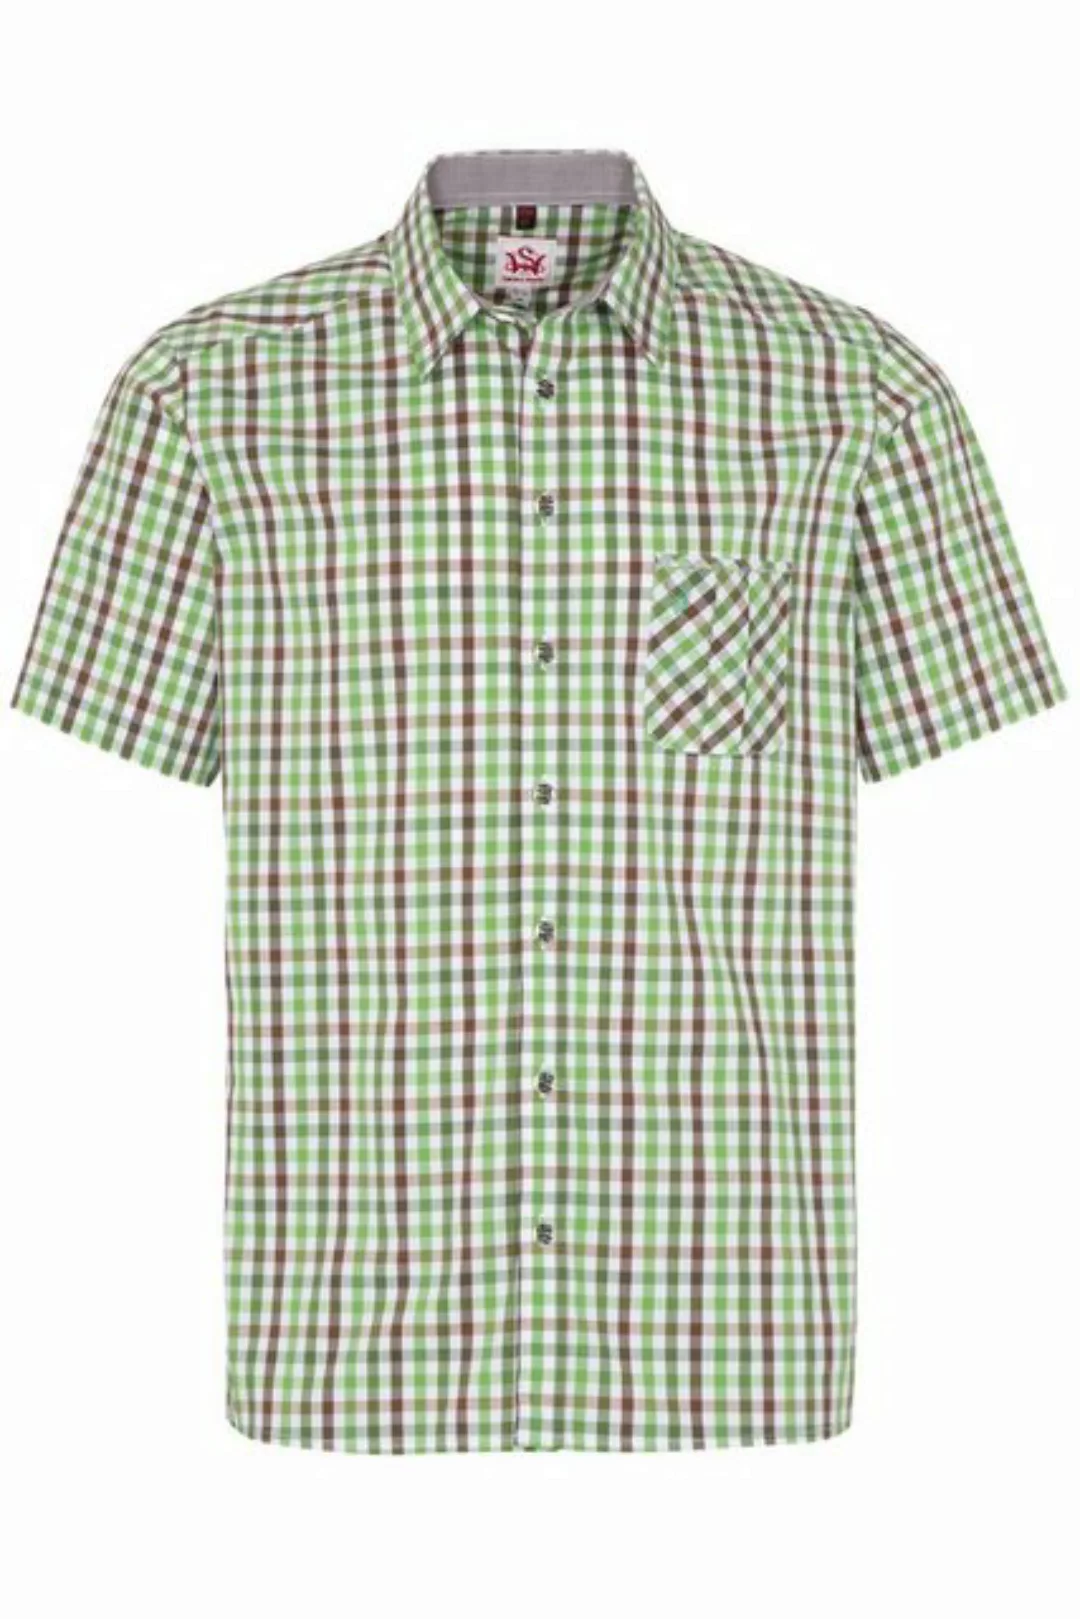 Spieth & Wensky Trachtenhemd Trachtenhemd - KRAKAU - grün, blau günstig online kaufen